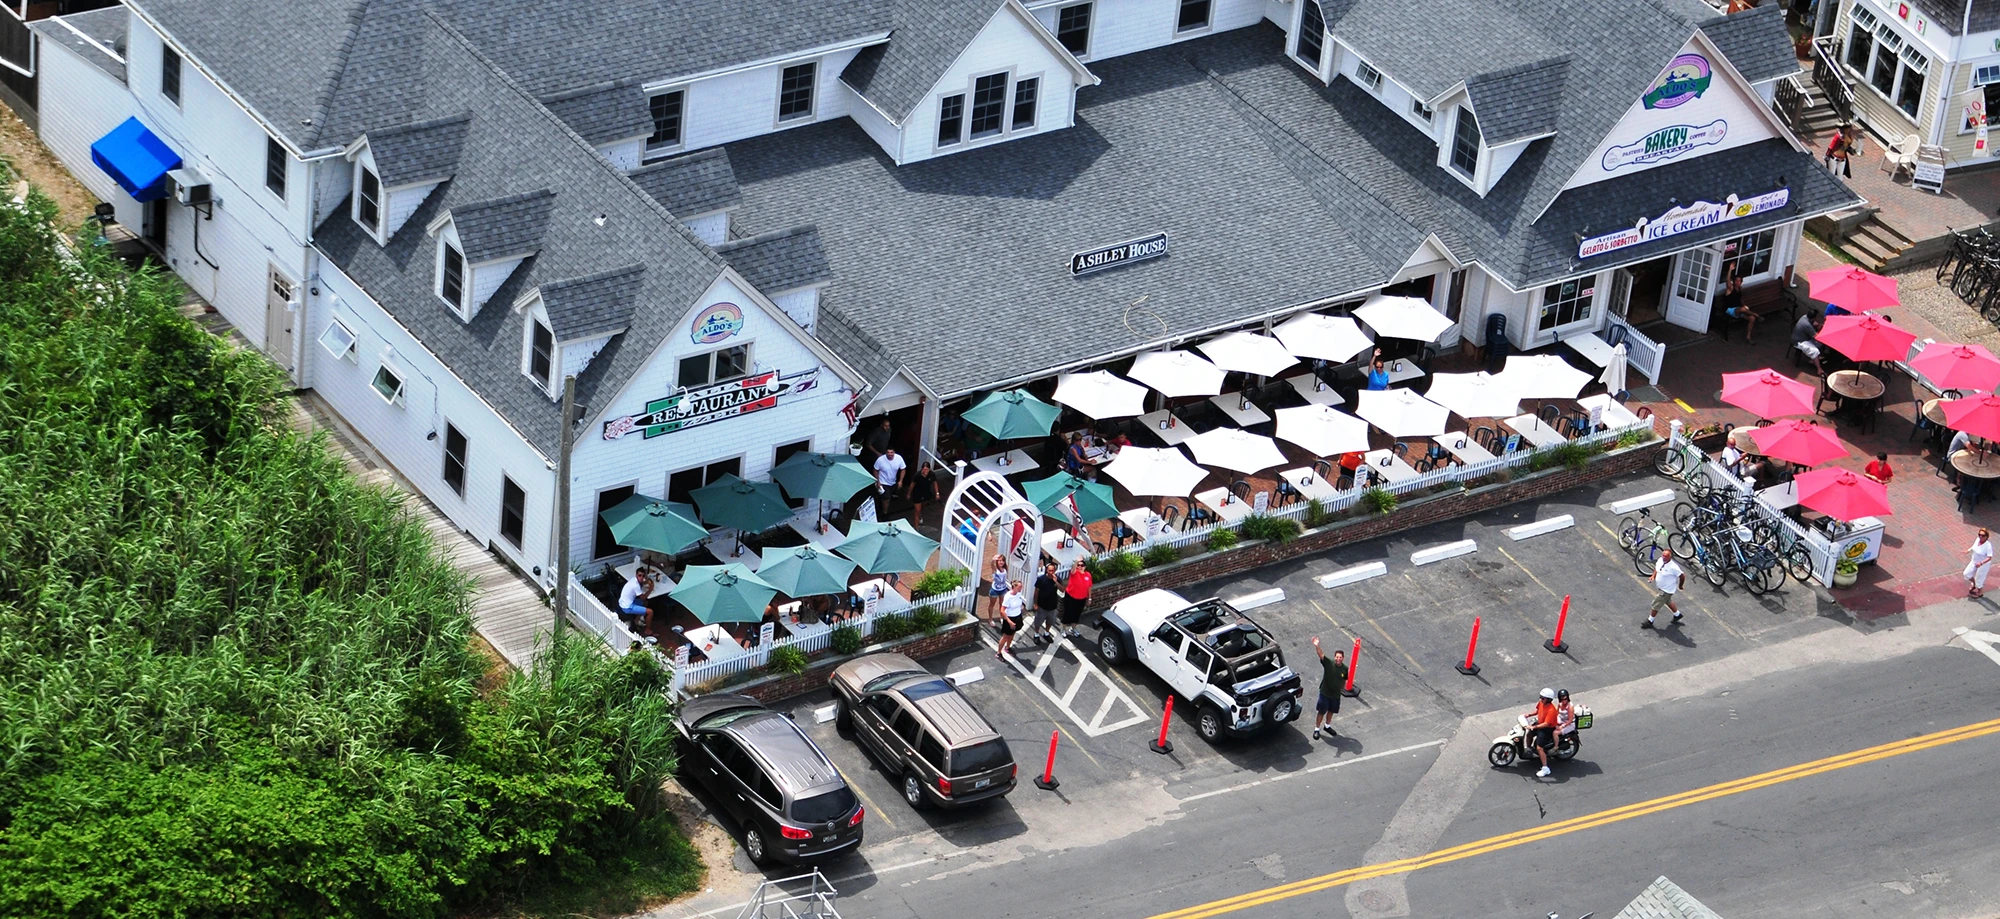 Aerial View of Aldo's Restaurant - Block Island, RI